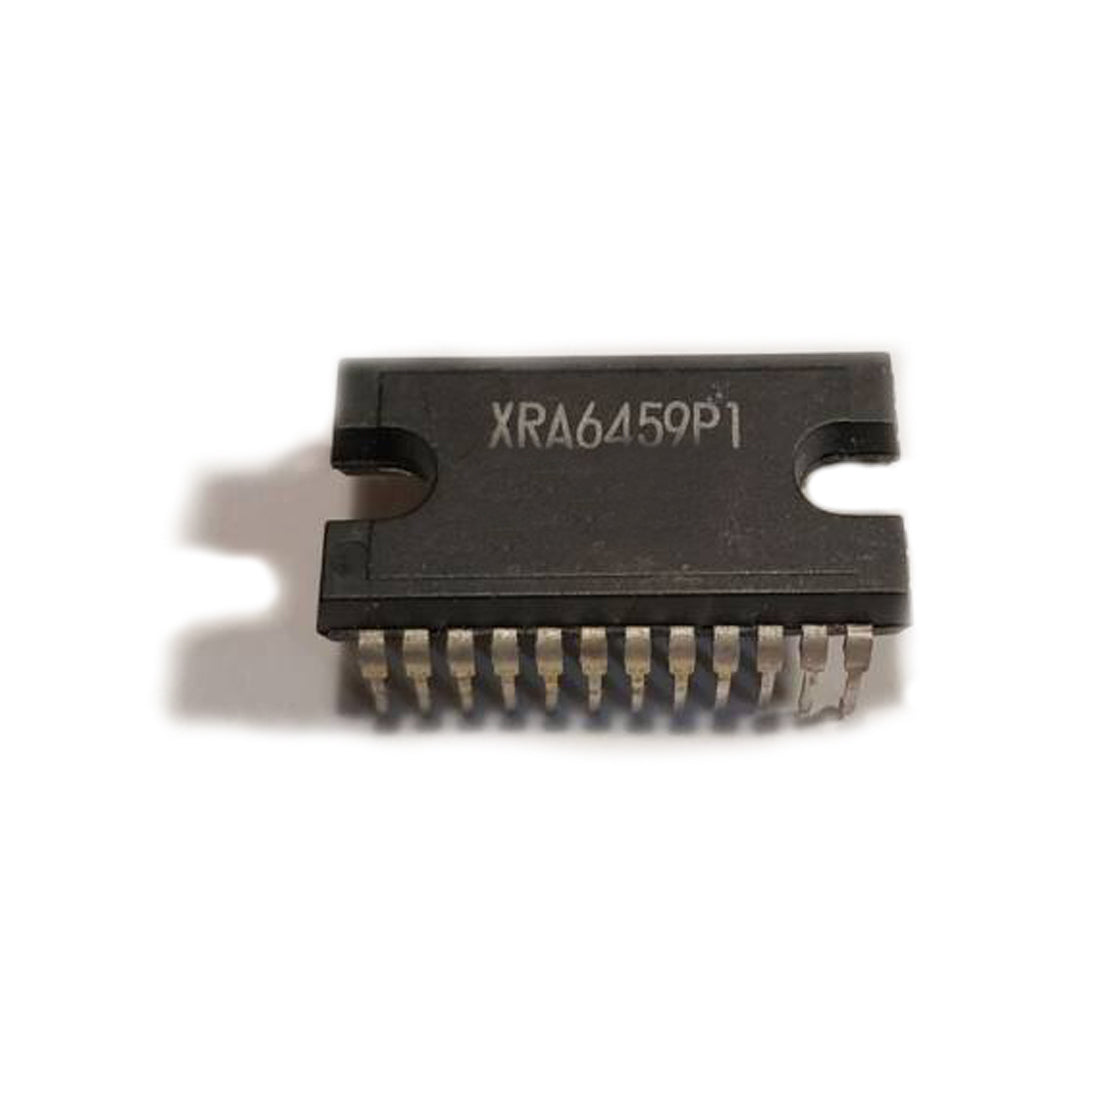 XRA6459P1 componente elettronico, circuito integrato, transistor, 24 contatti